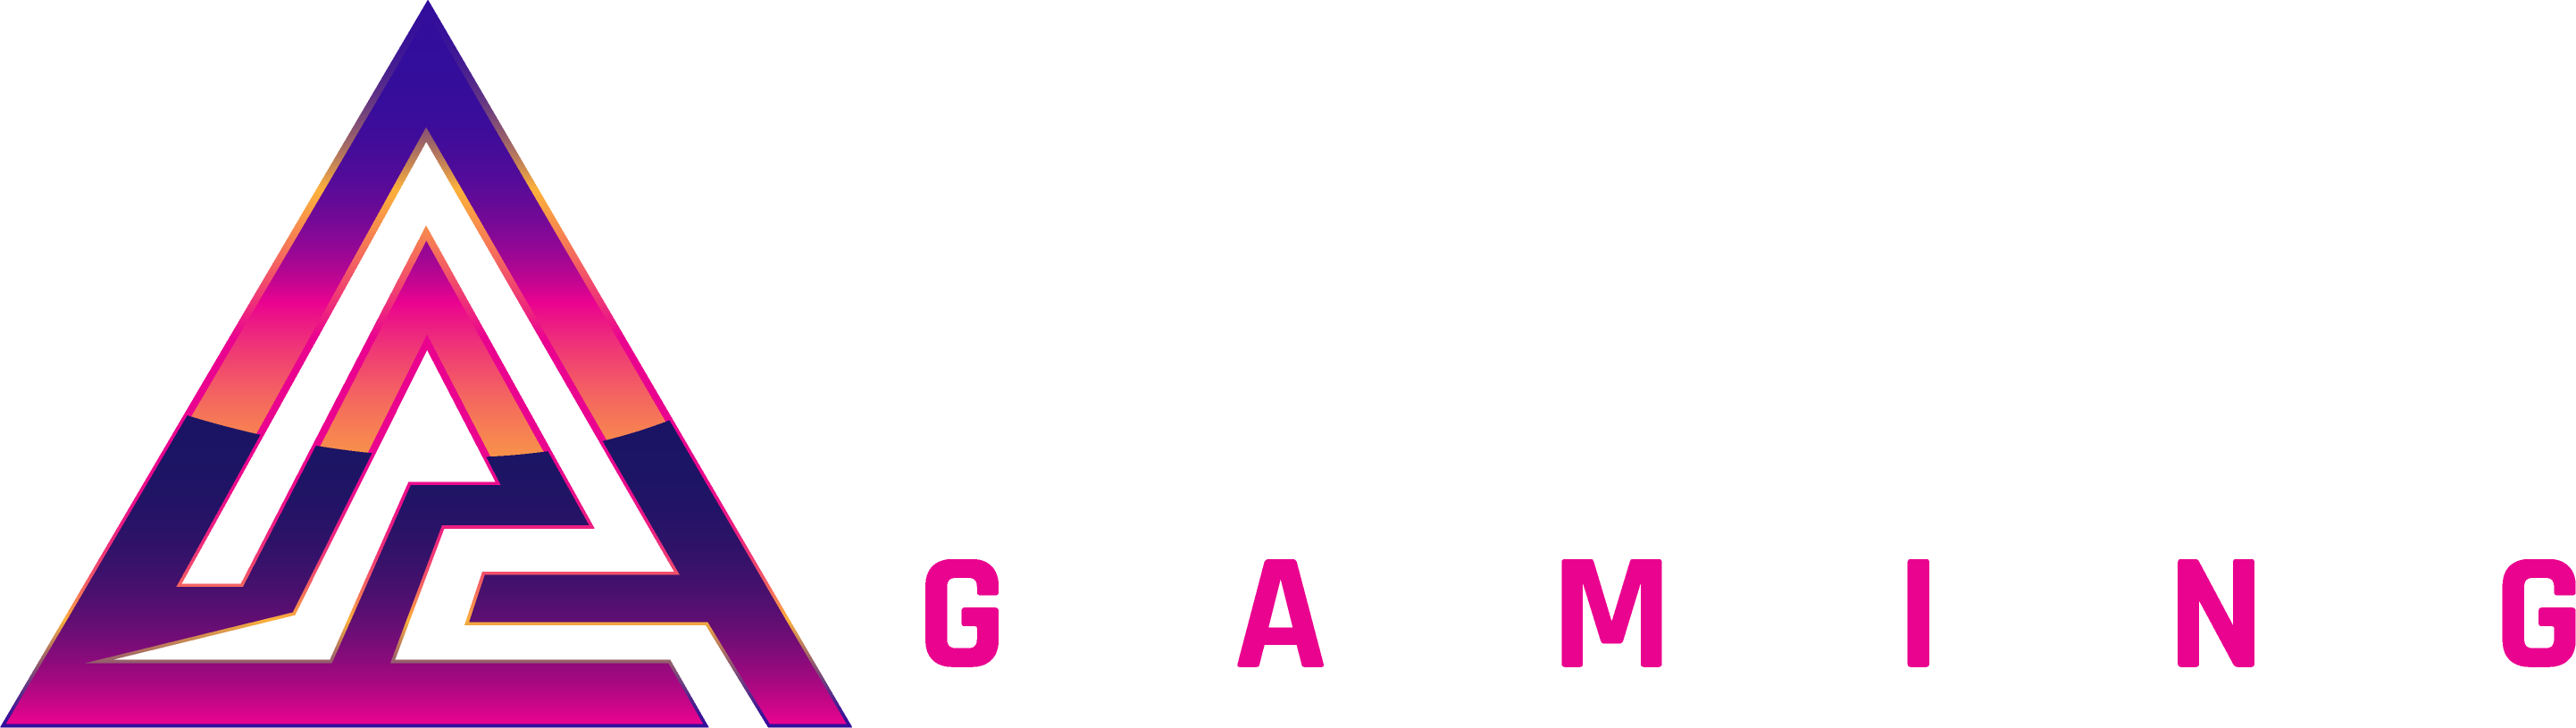 Paradox-Gaming-Logo-Horizontal-trim.png